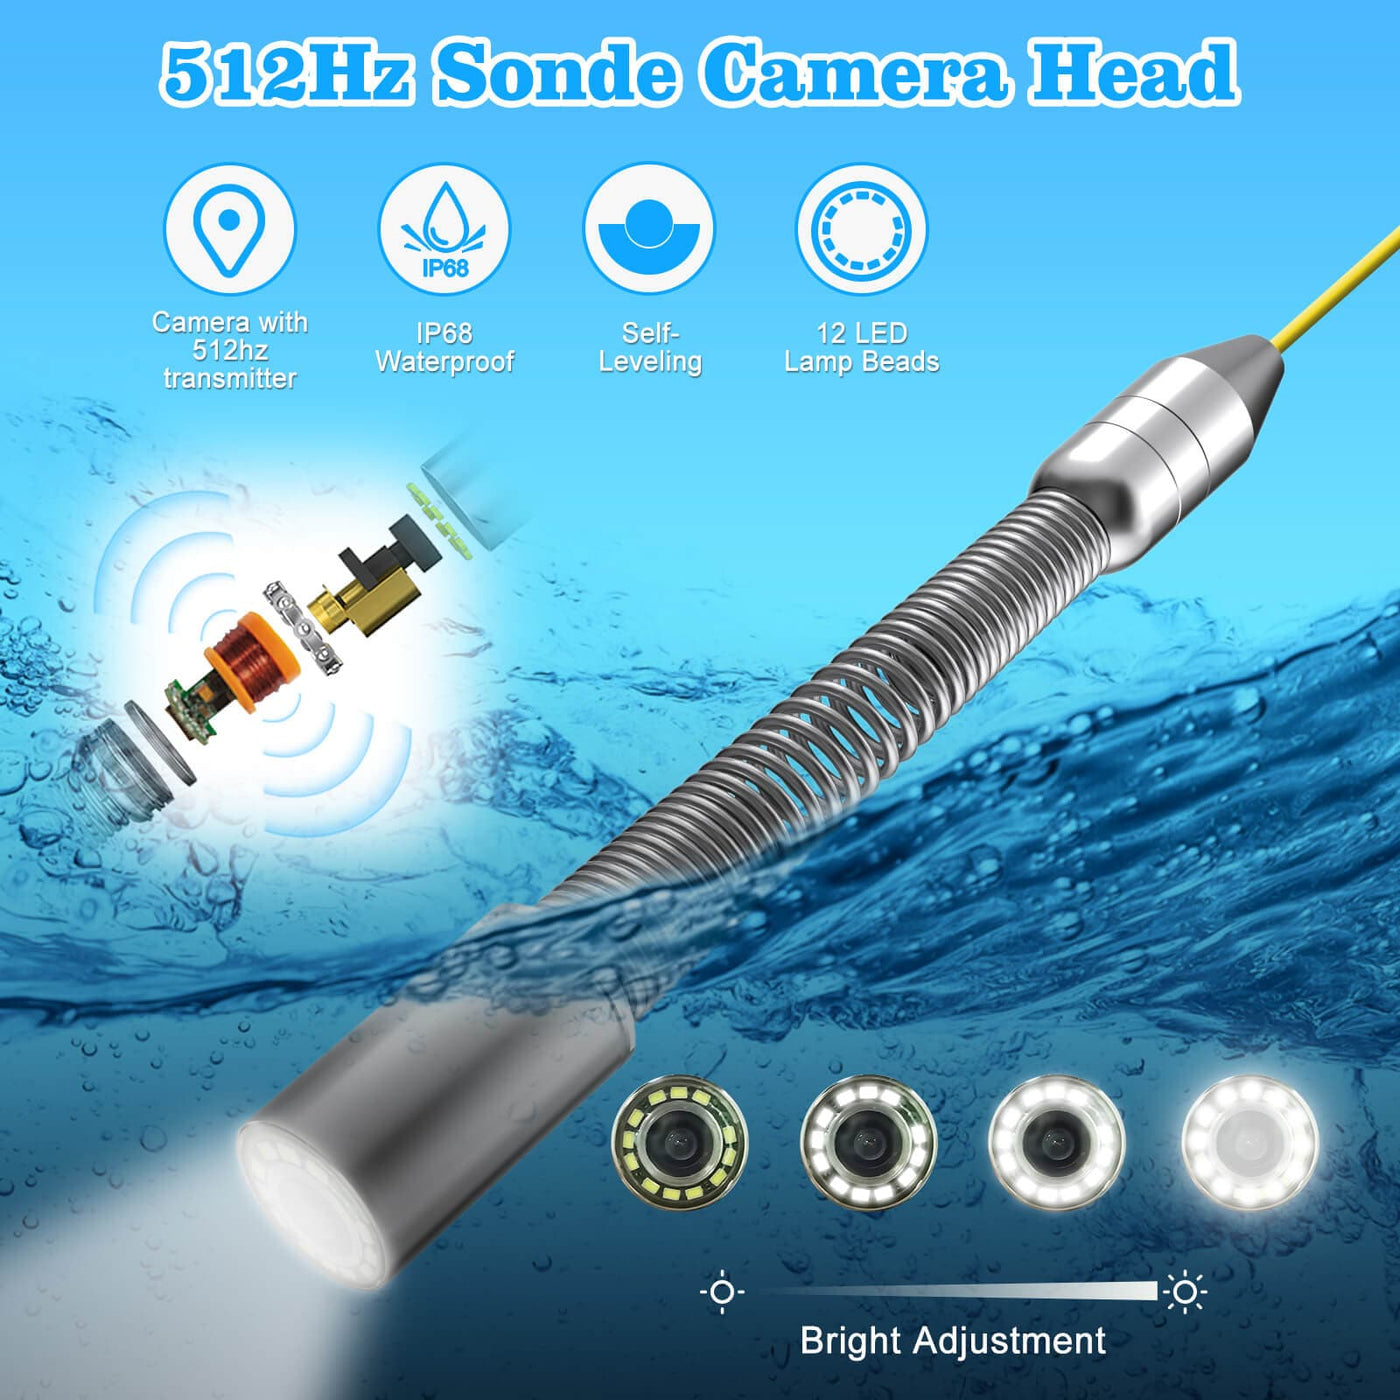 Long Range 263ft - 525ft Sewer Camera with 512Hz Sonde Transmitter | Sanyipace U88